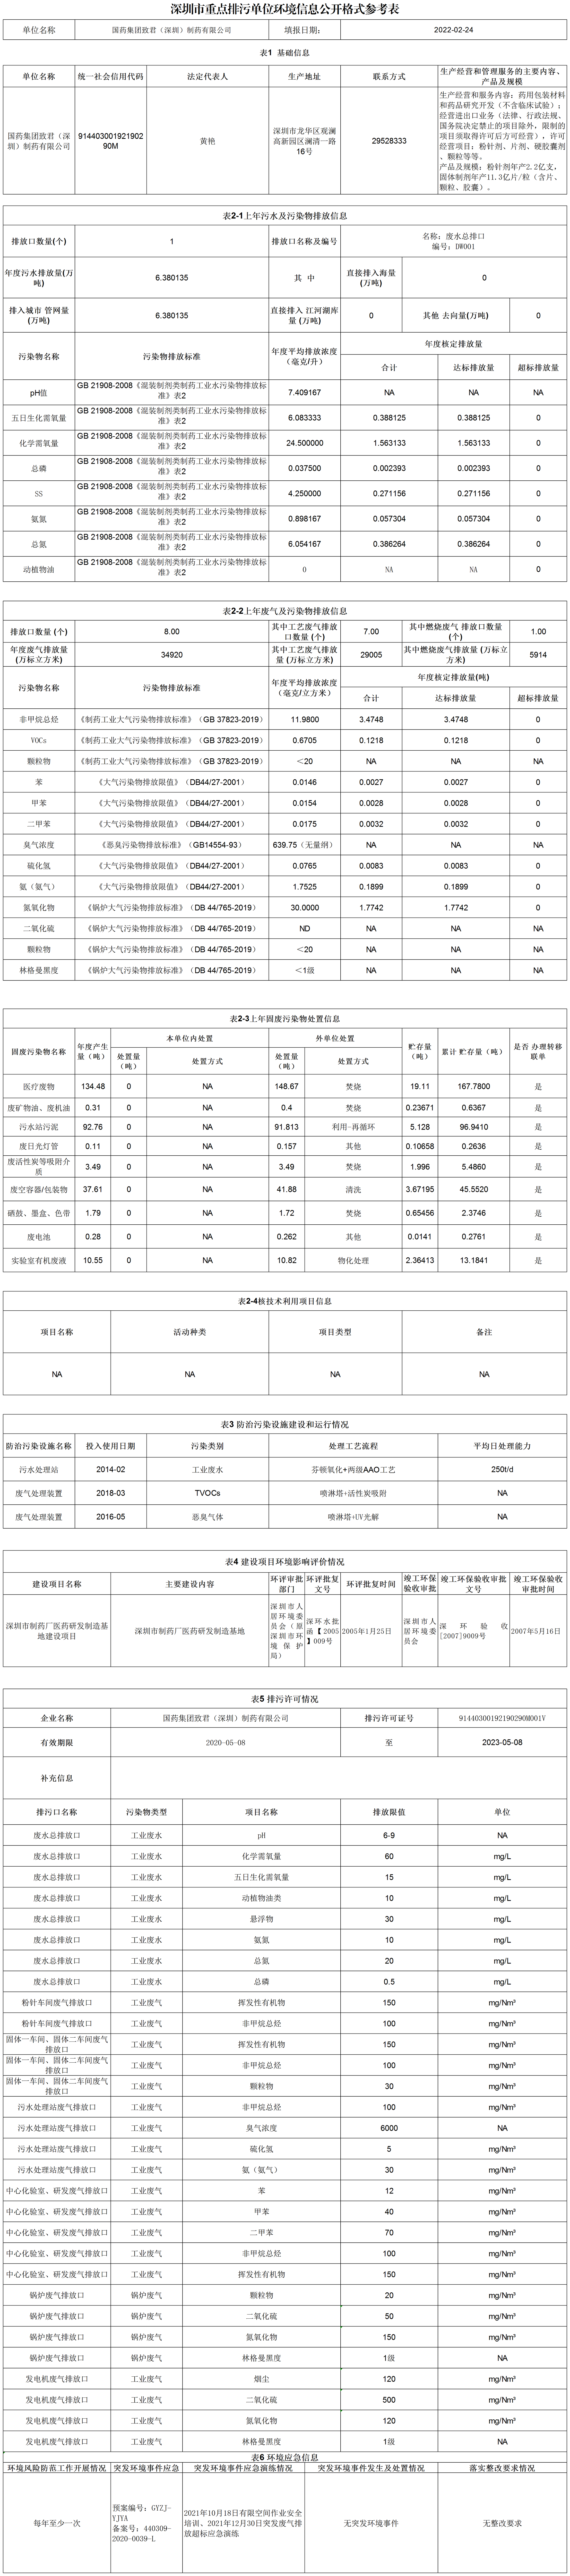 附件1：深圳市重點排污單位環境信息公開格式參考表(20220309)_A2L108.png